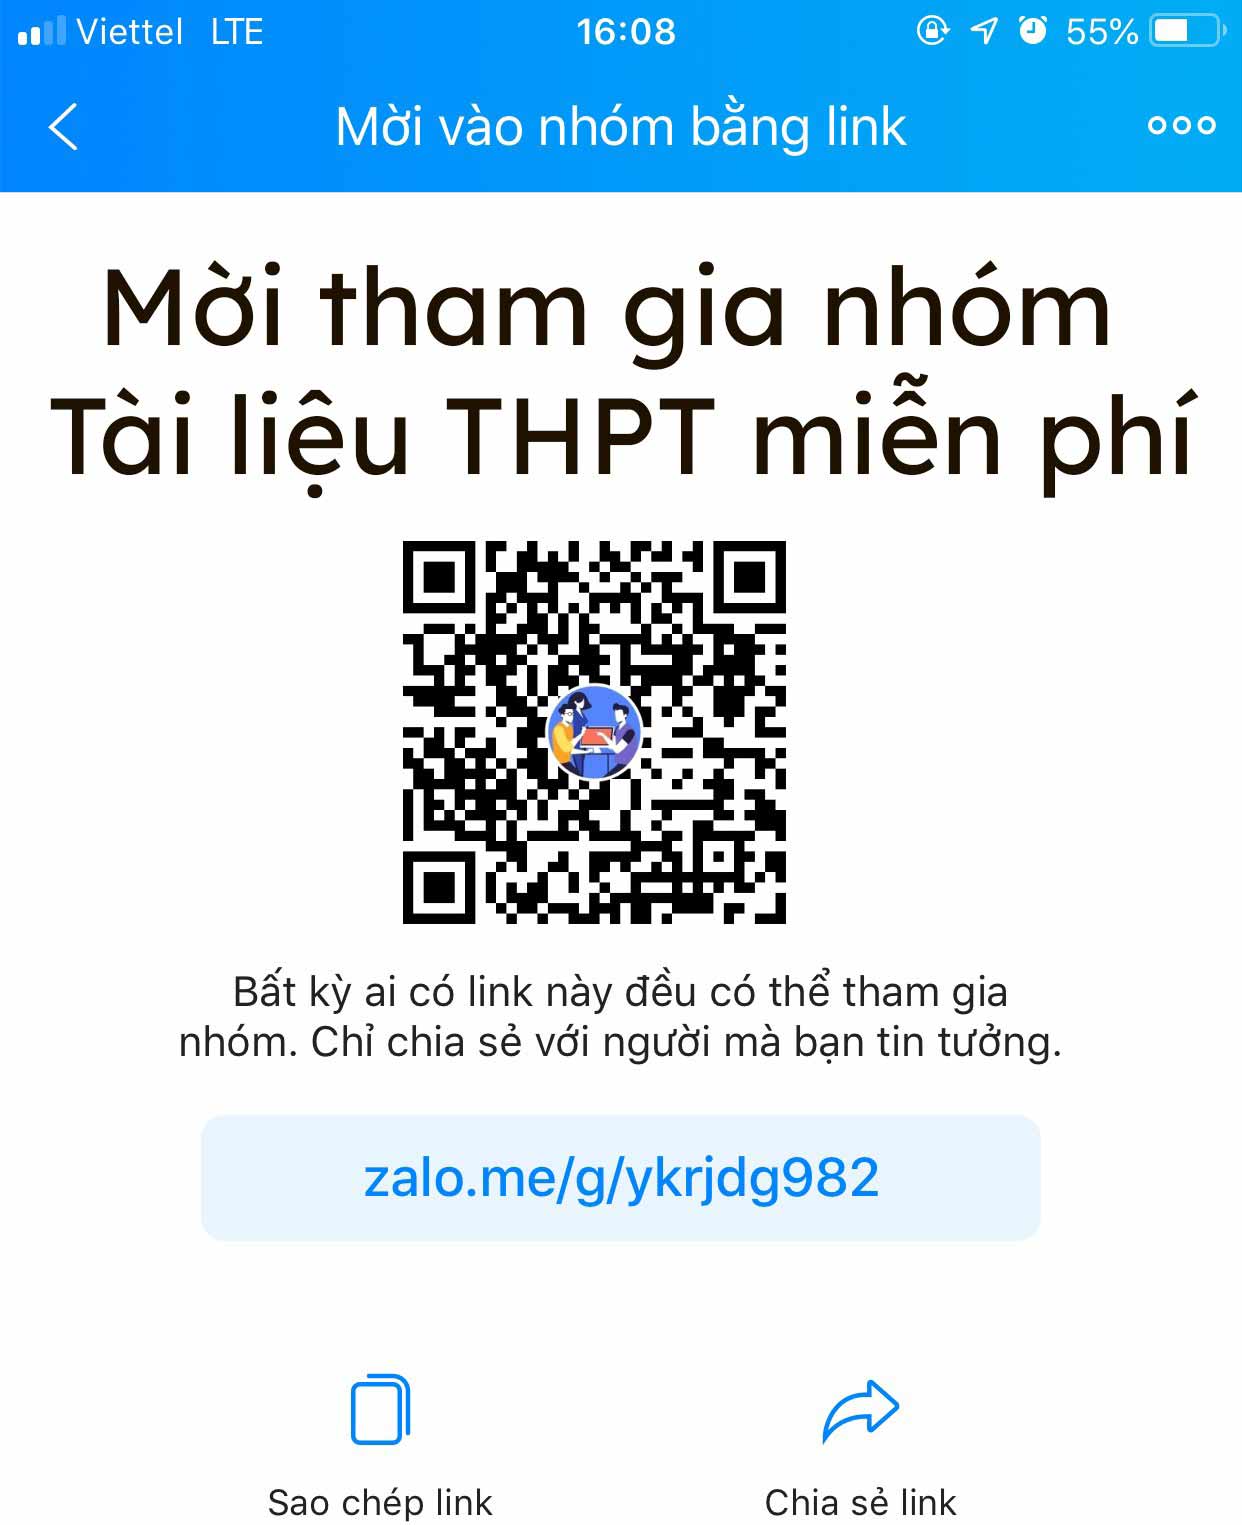 Tài liệu THPT miễn phí